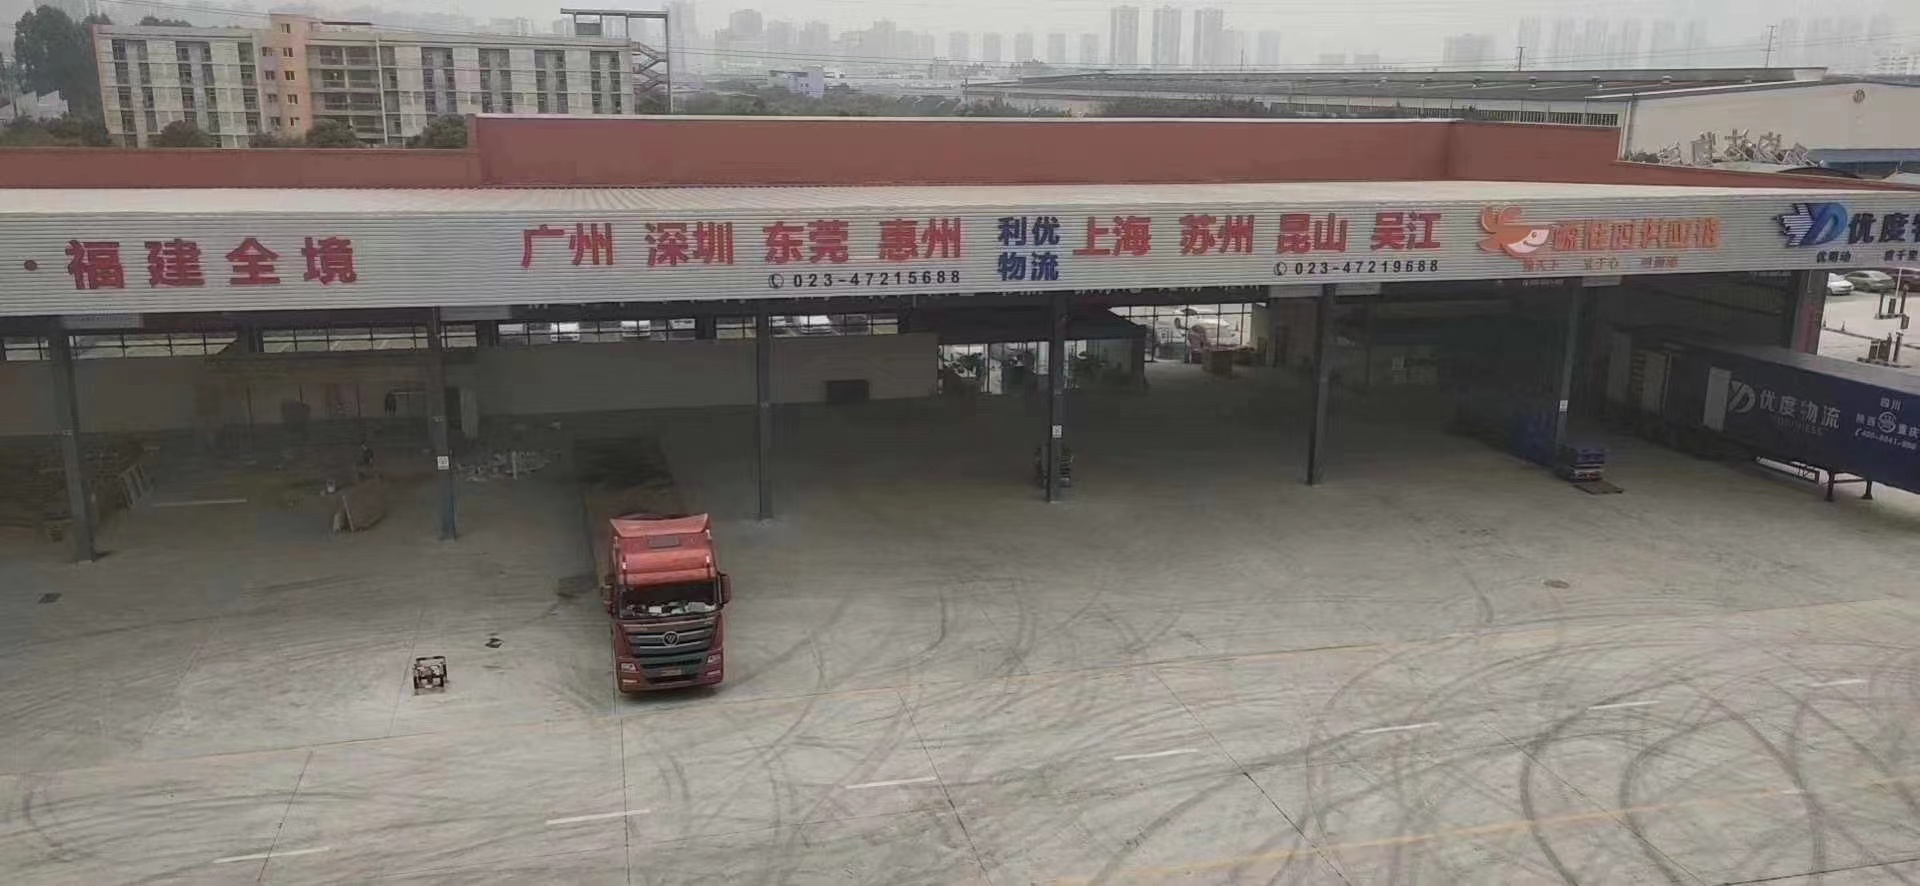 重庆到北京大件物流 整车零担 危险品运输 轿车托运公司  重庆发北京往返专线